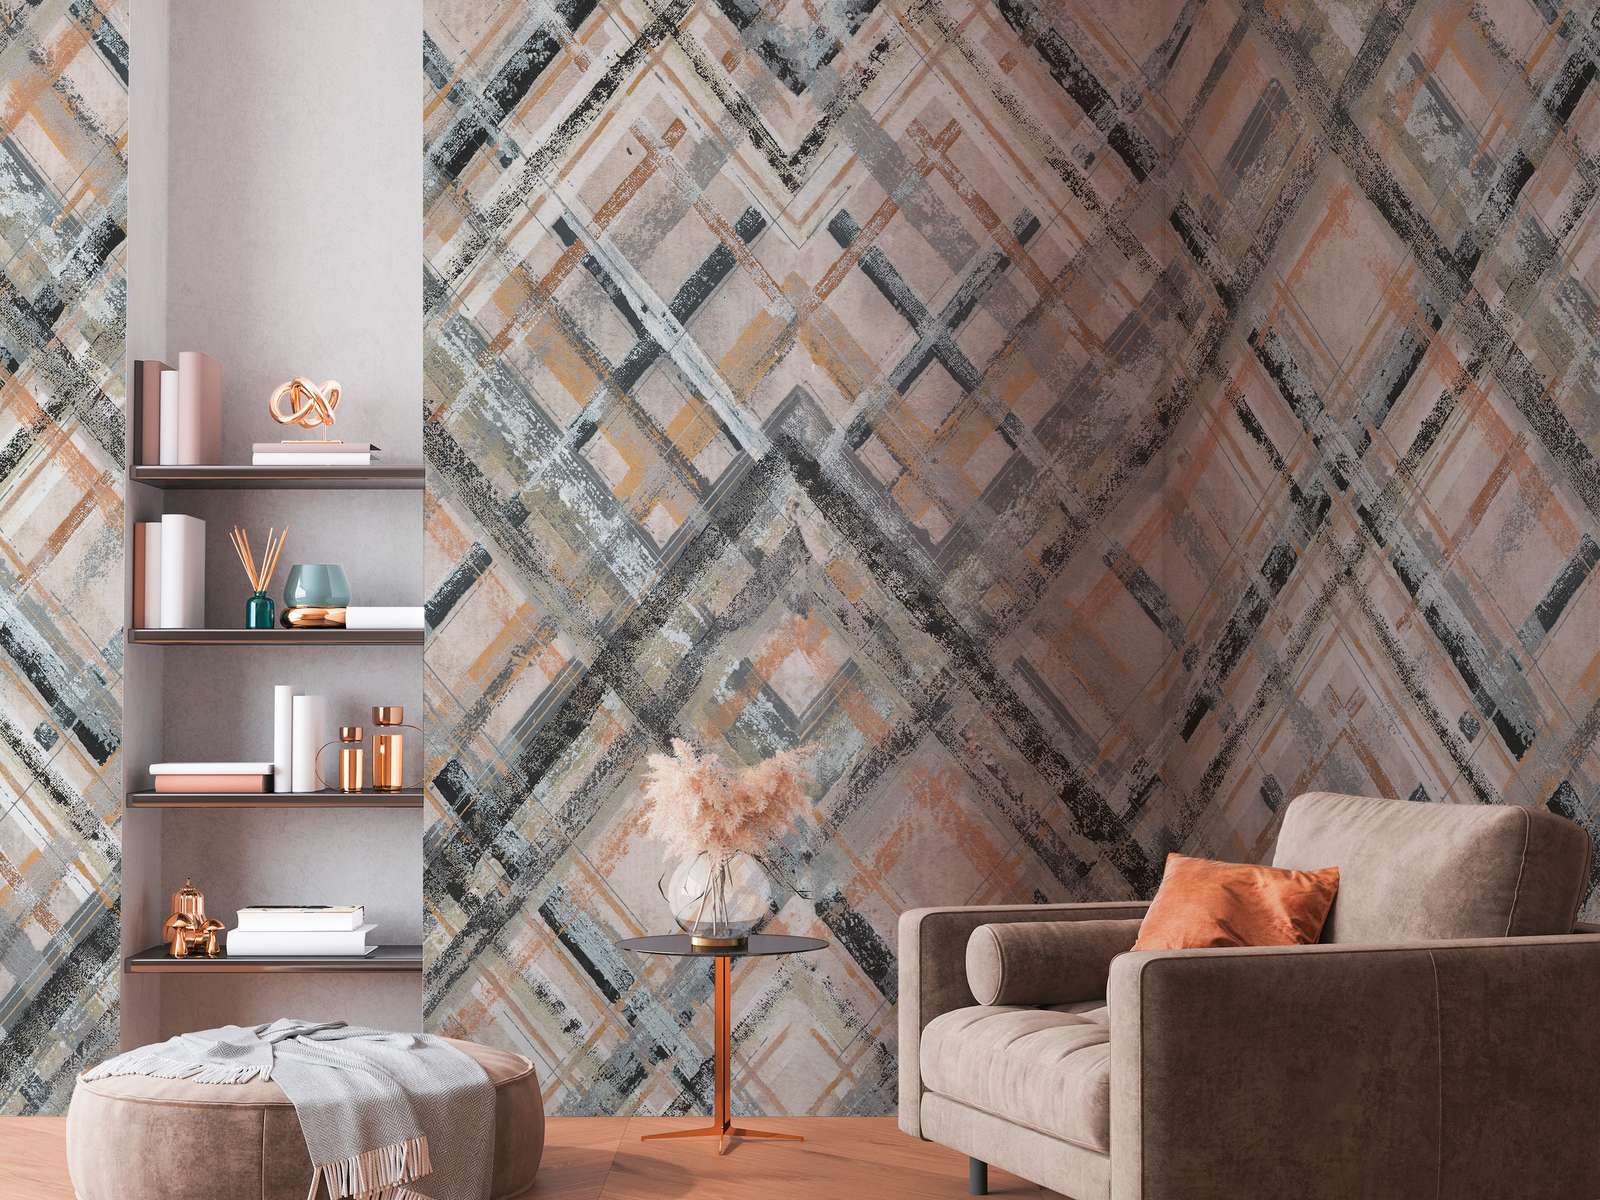             Abstract vliesbehang met geometrisch patroon - grijs, beige, blauw-grijs
        